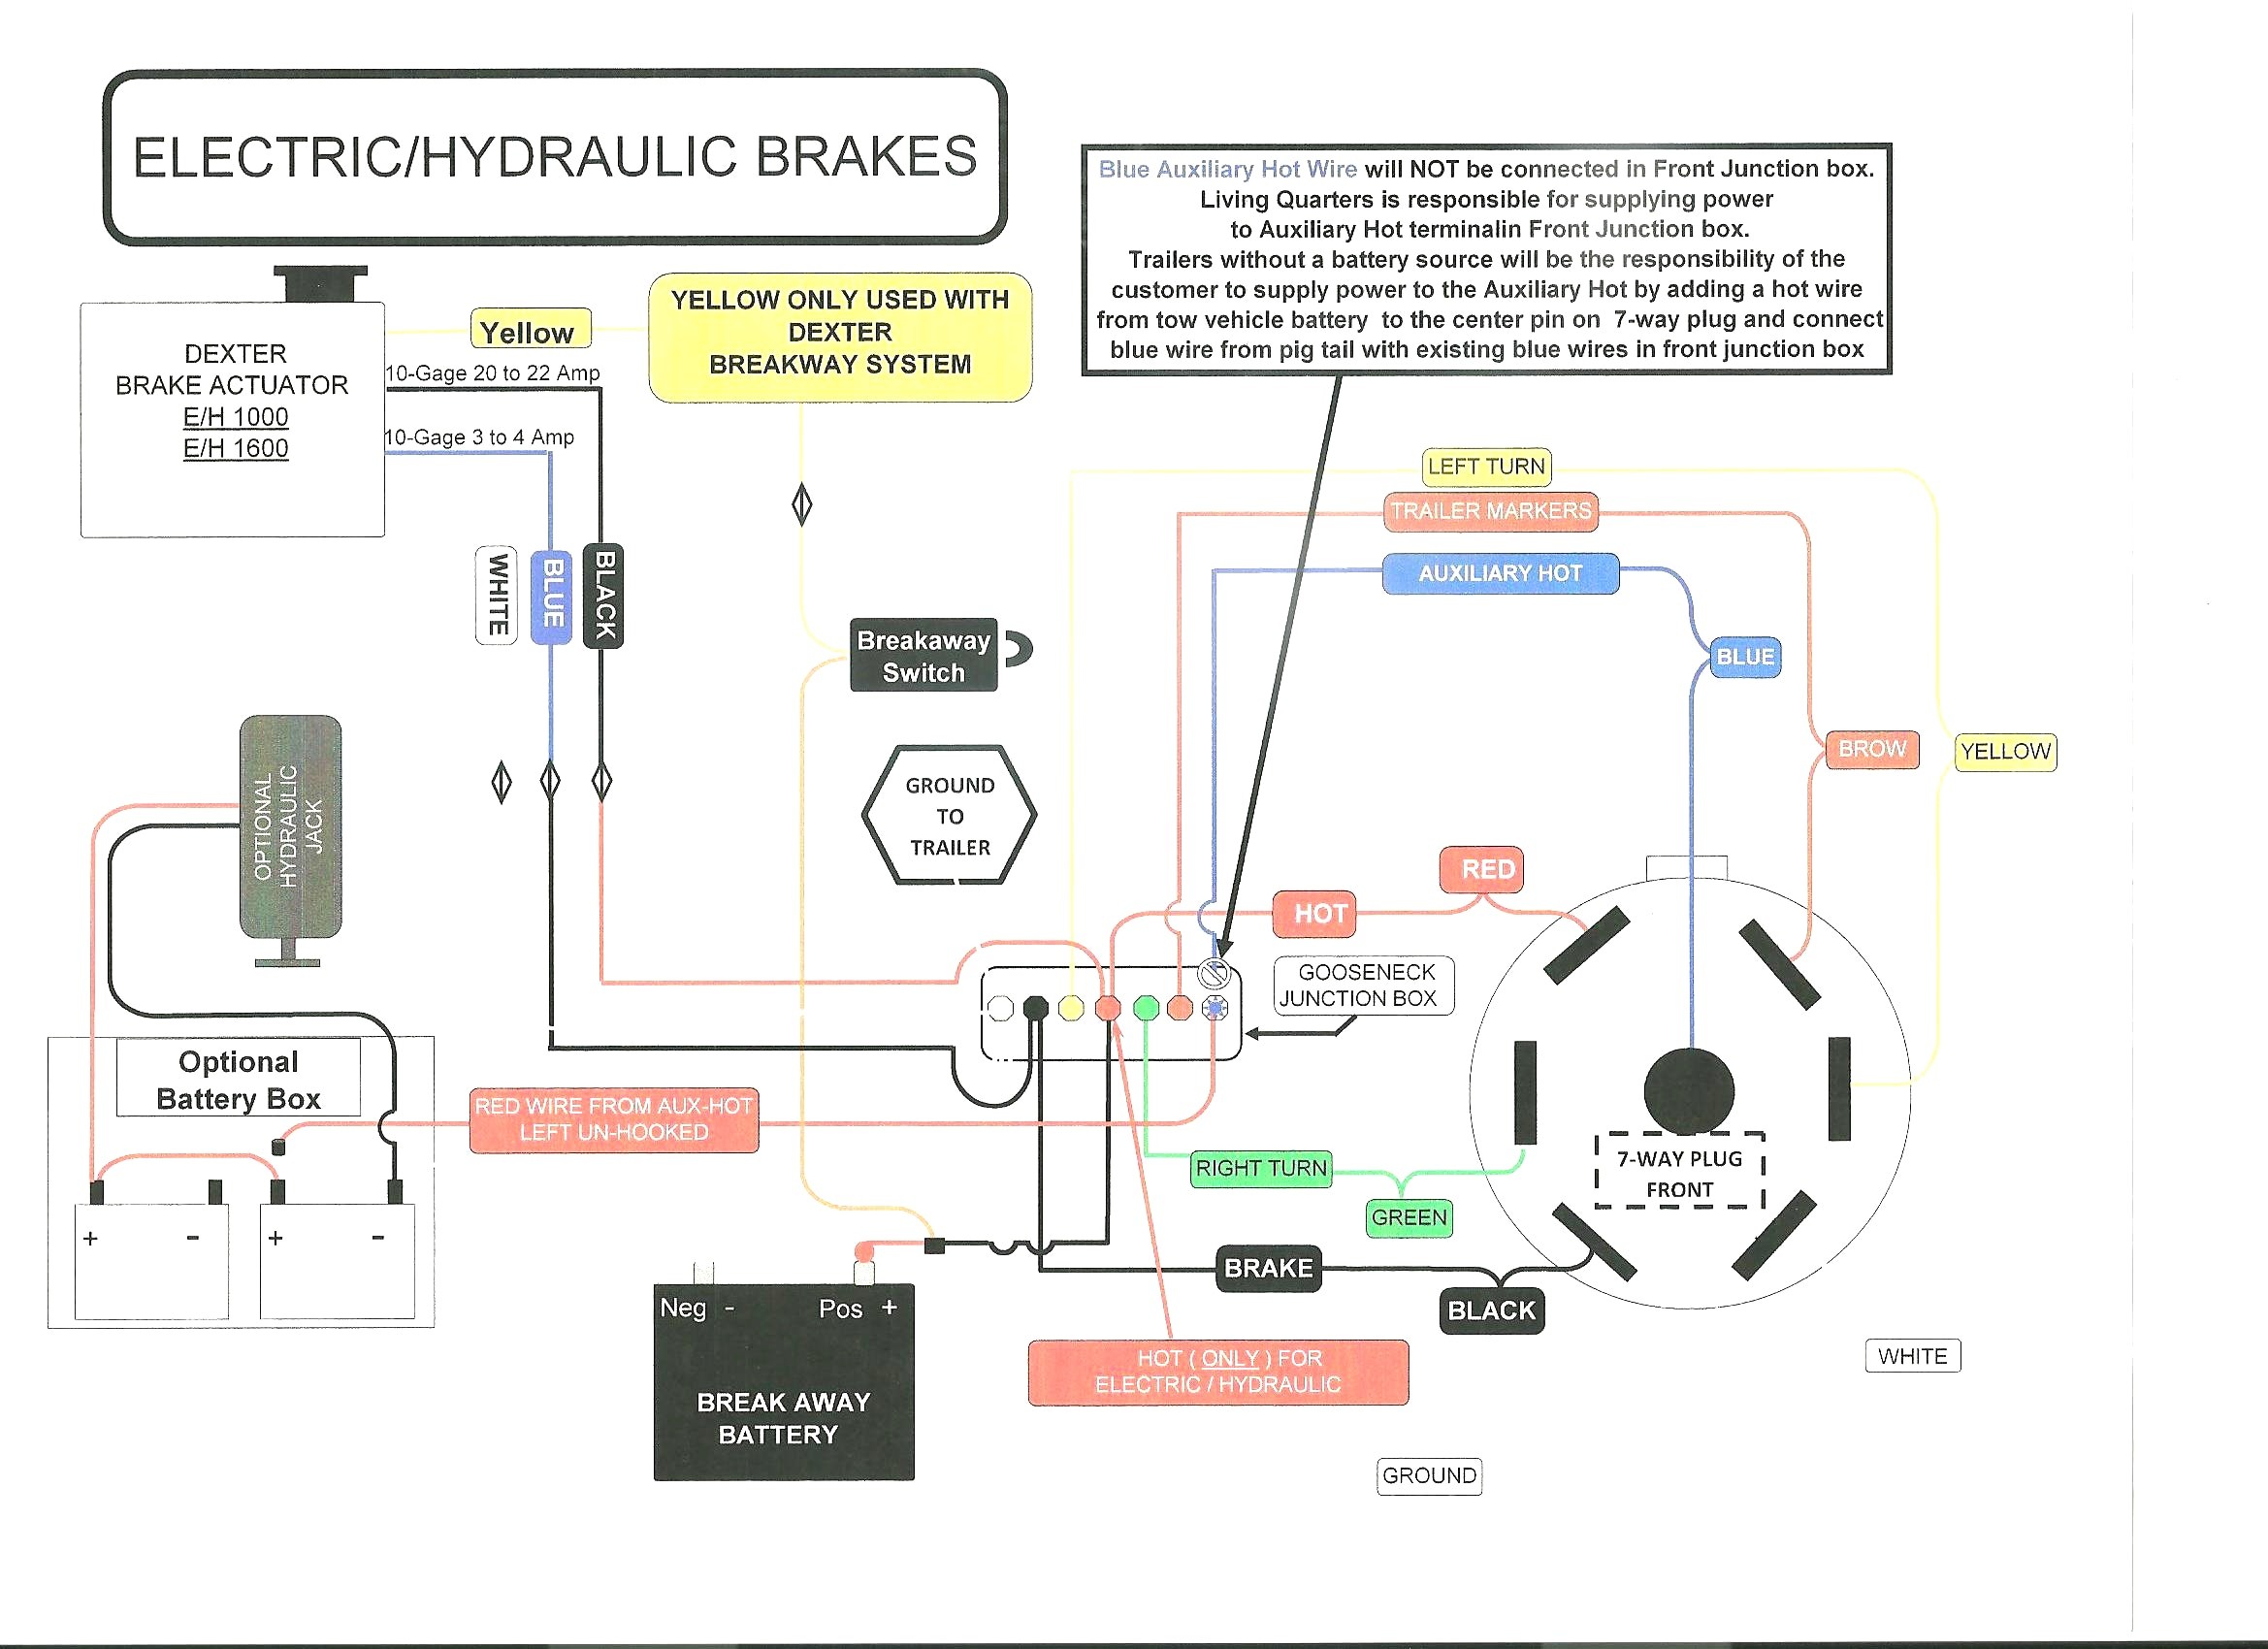 Breakaway Wiring Diagram Electric Brake Controller Wiring Diagram Wiring Diagram Of Breakaway Wiring Diagram